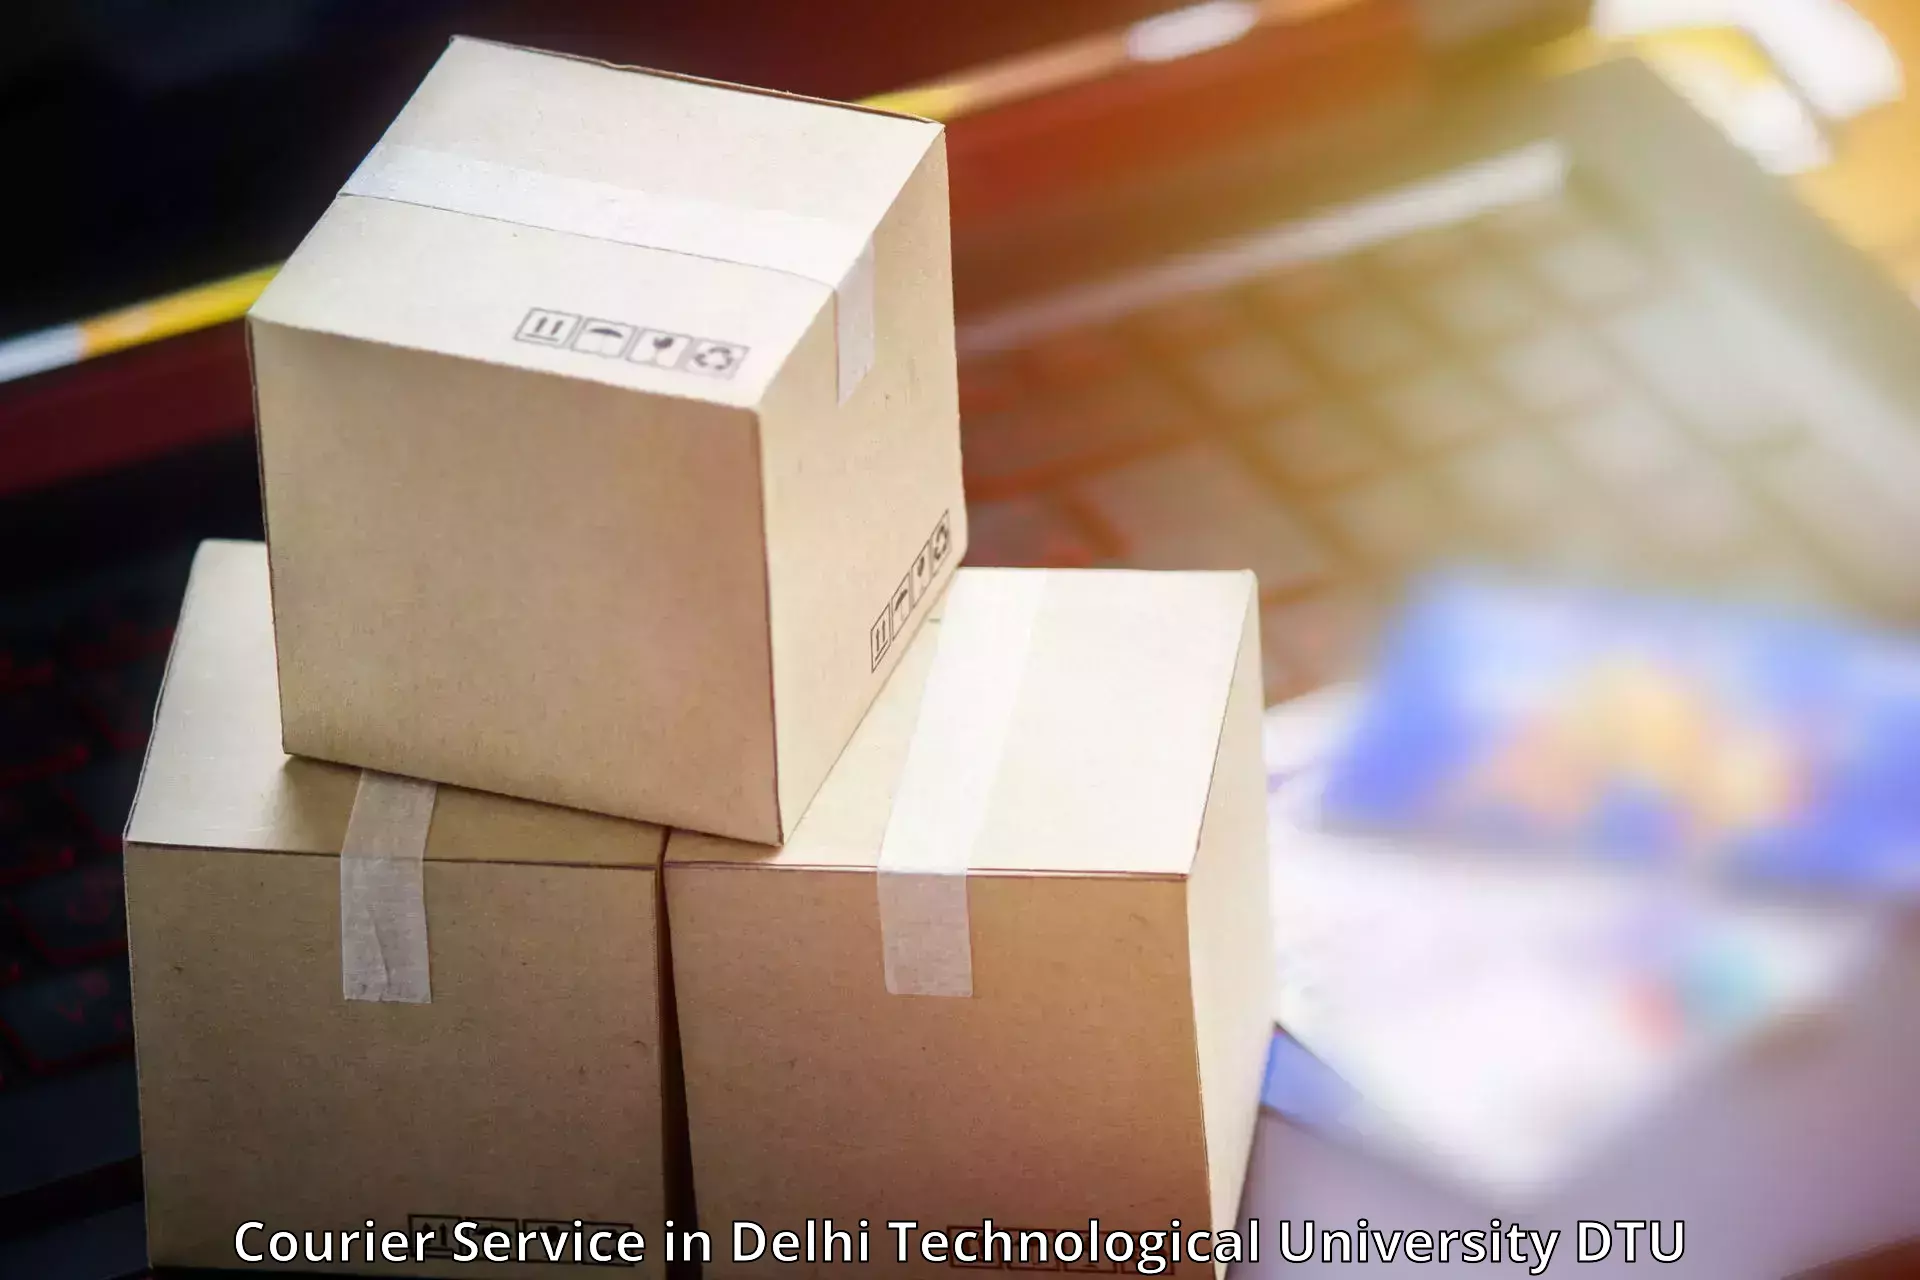 High value parcel delivery in Delhi Technological University DTU